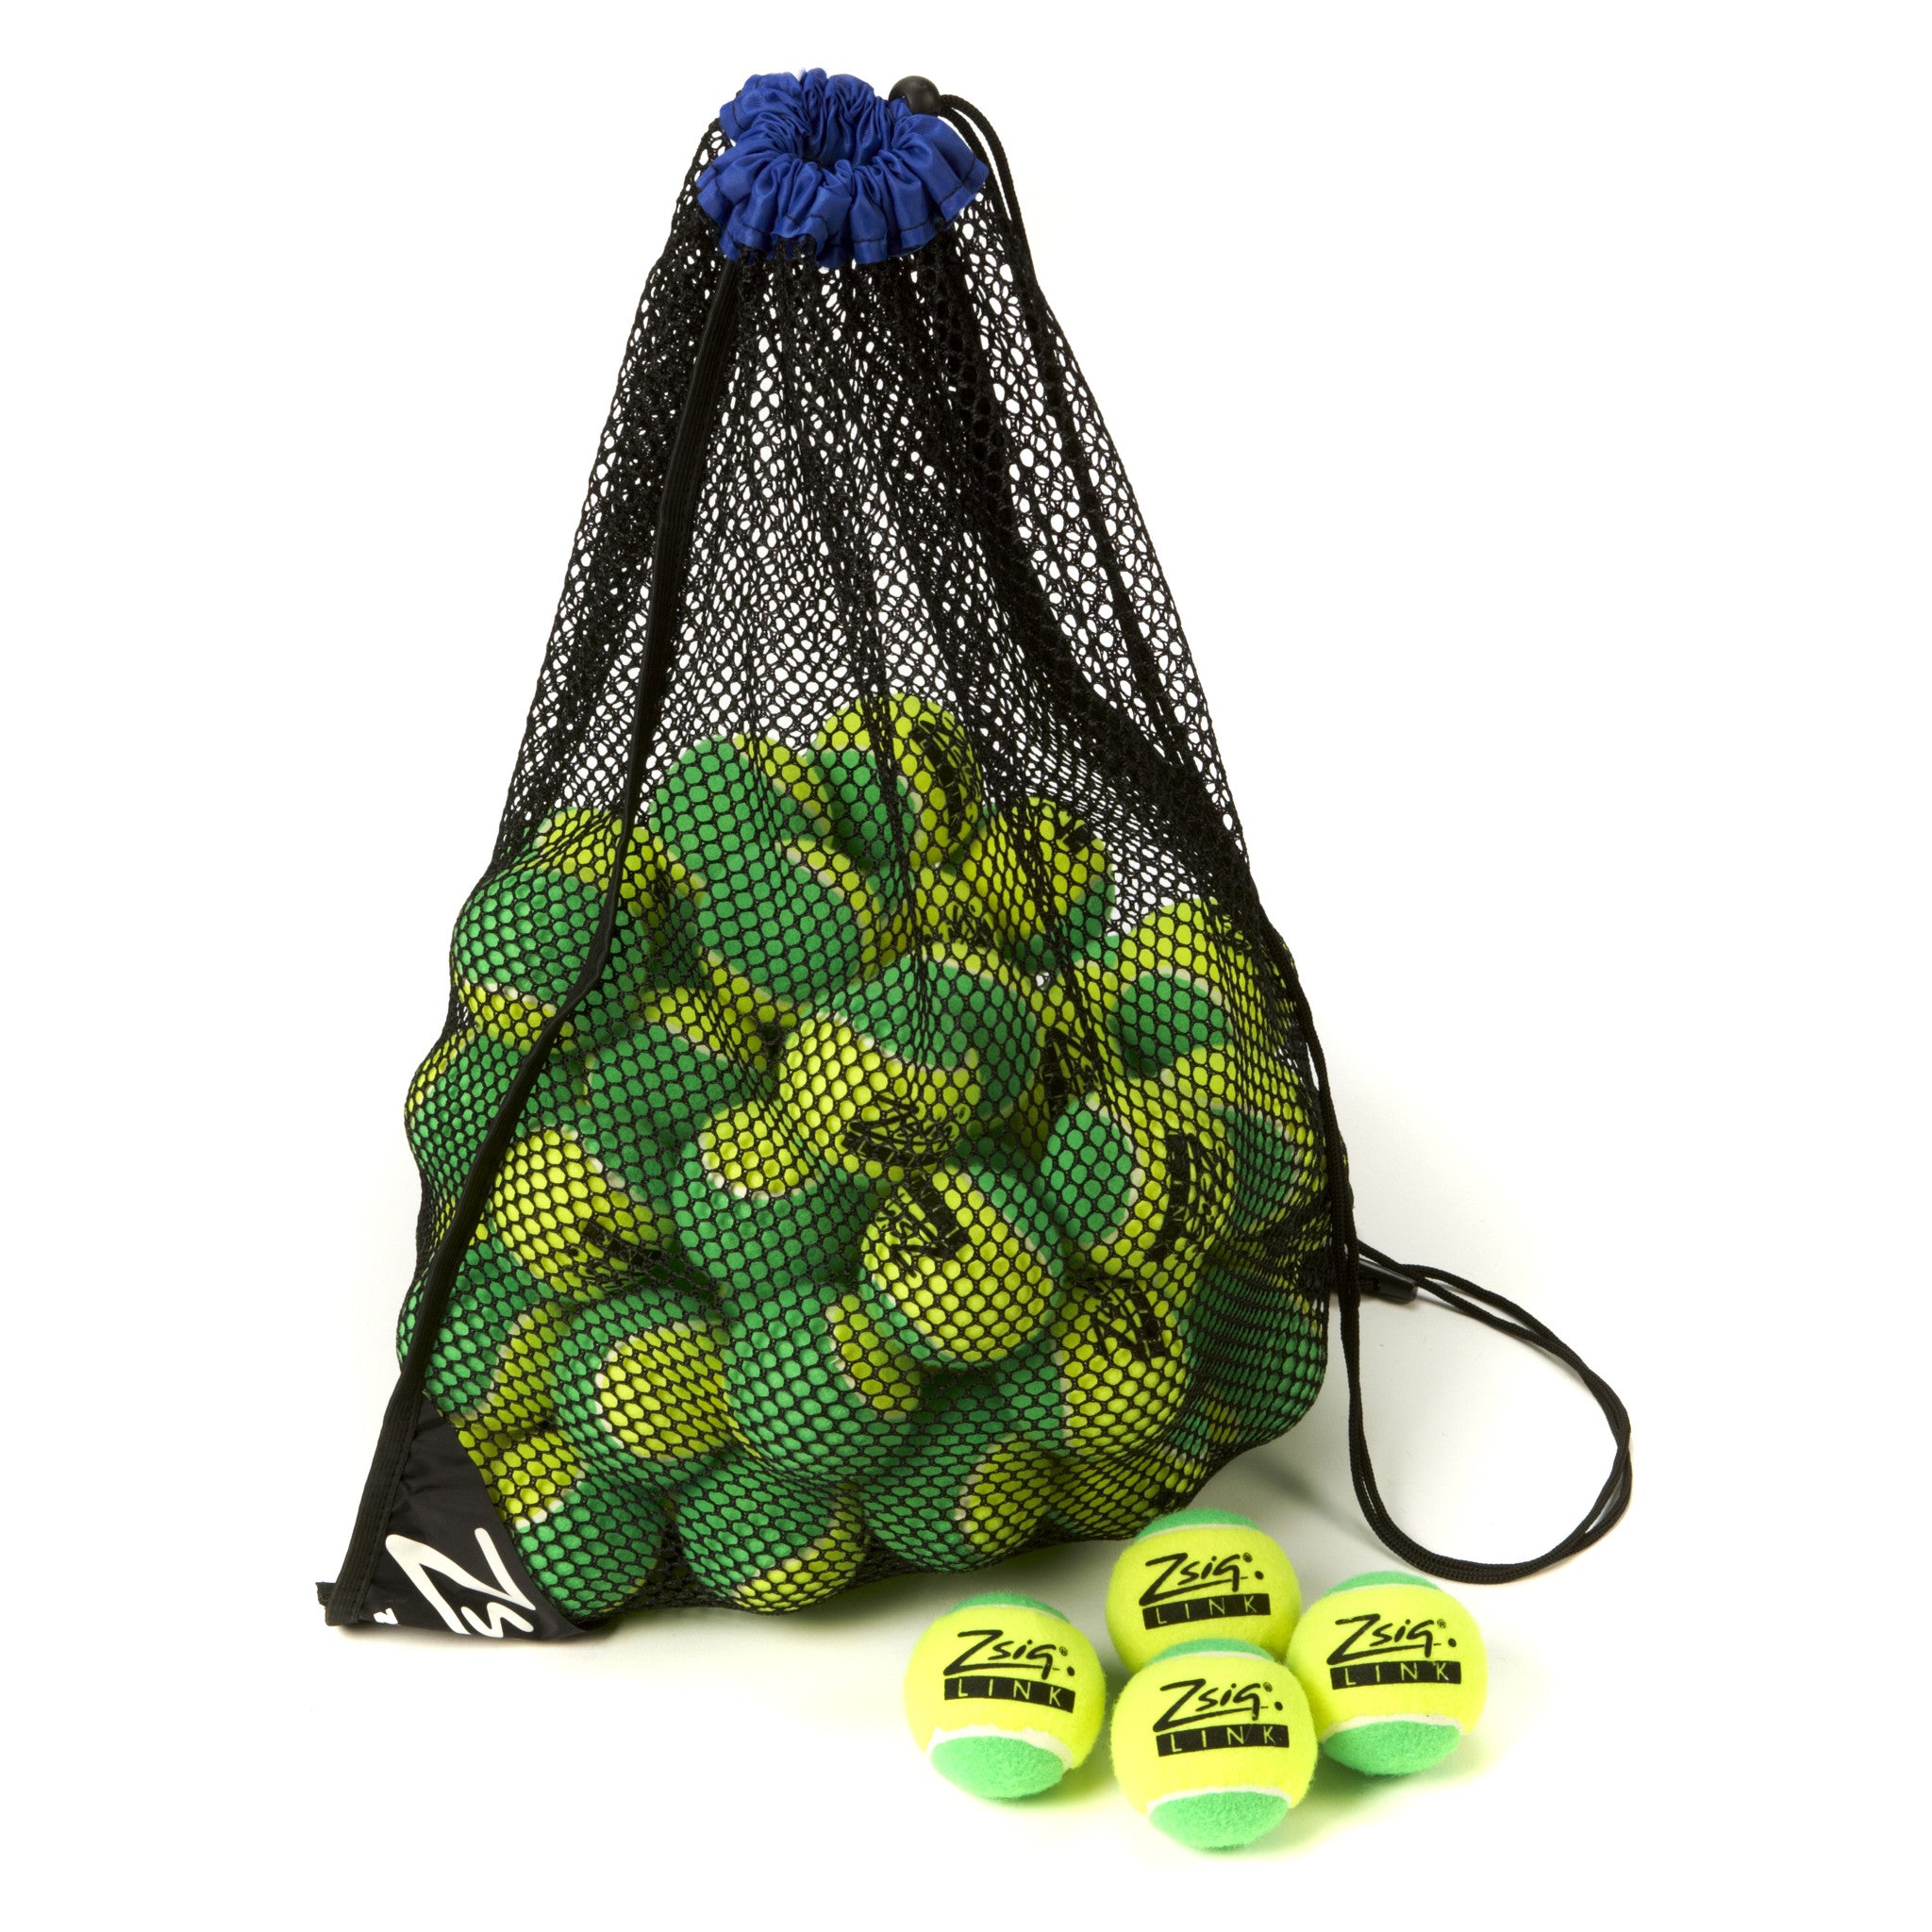 Green Mini Tennis Balls. Zsig "Link Green", carry bag of 5 dozen balls.